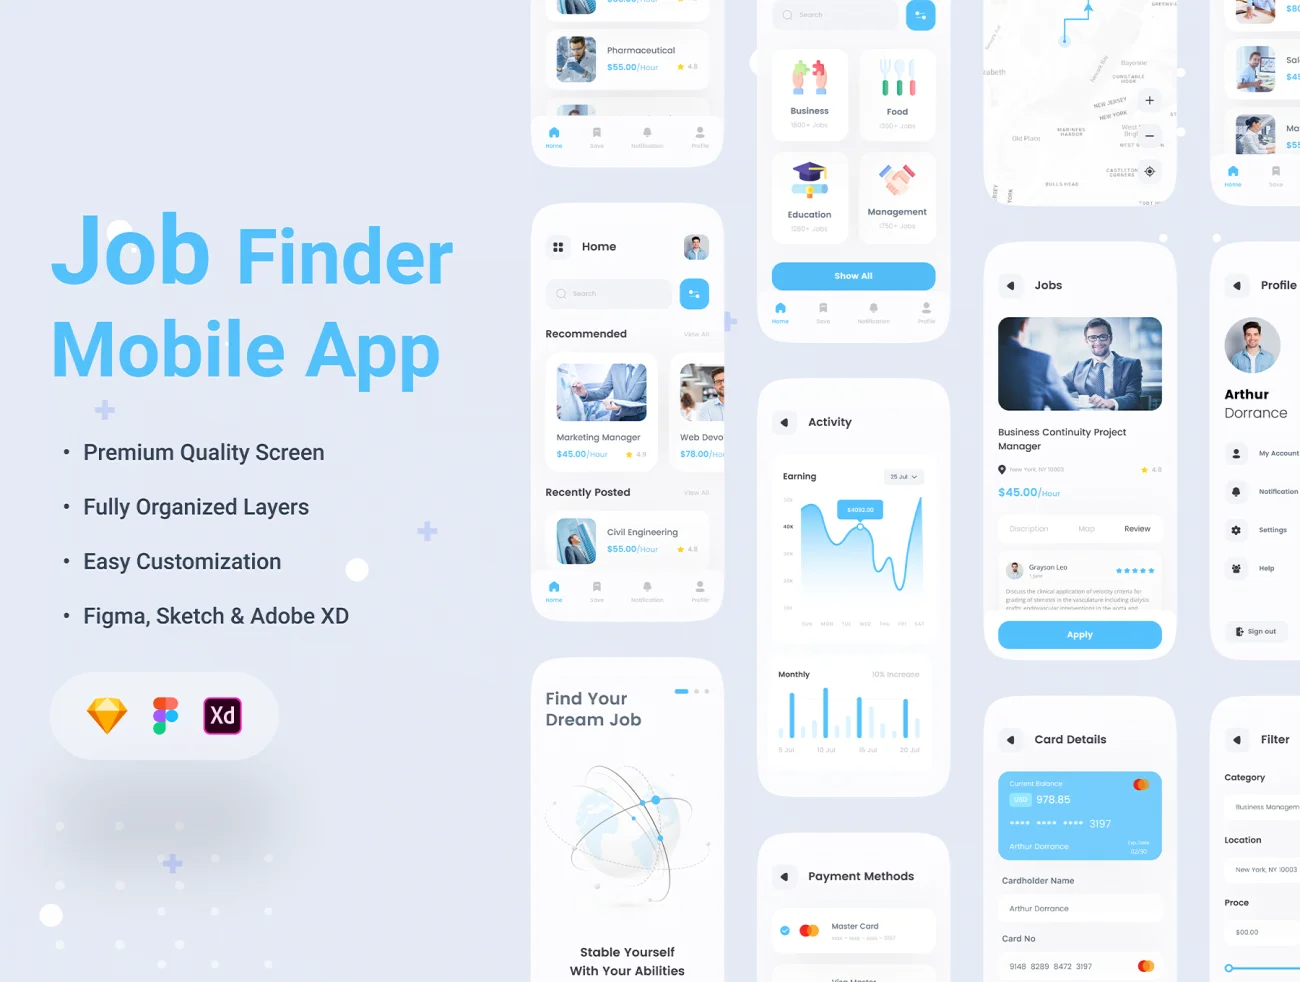 30屏求职招聘手机应用UI设计套件 Job Finder App插图3